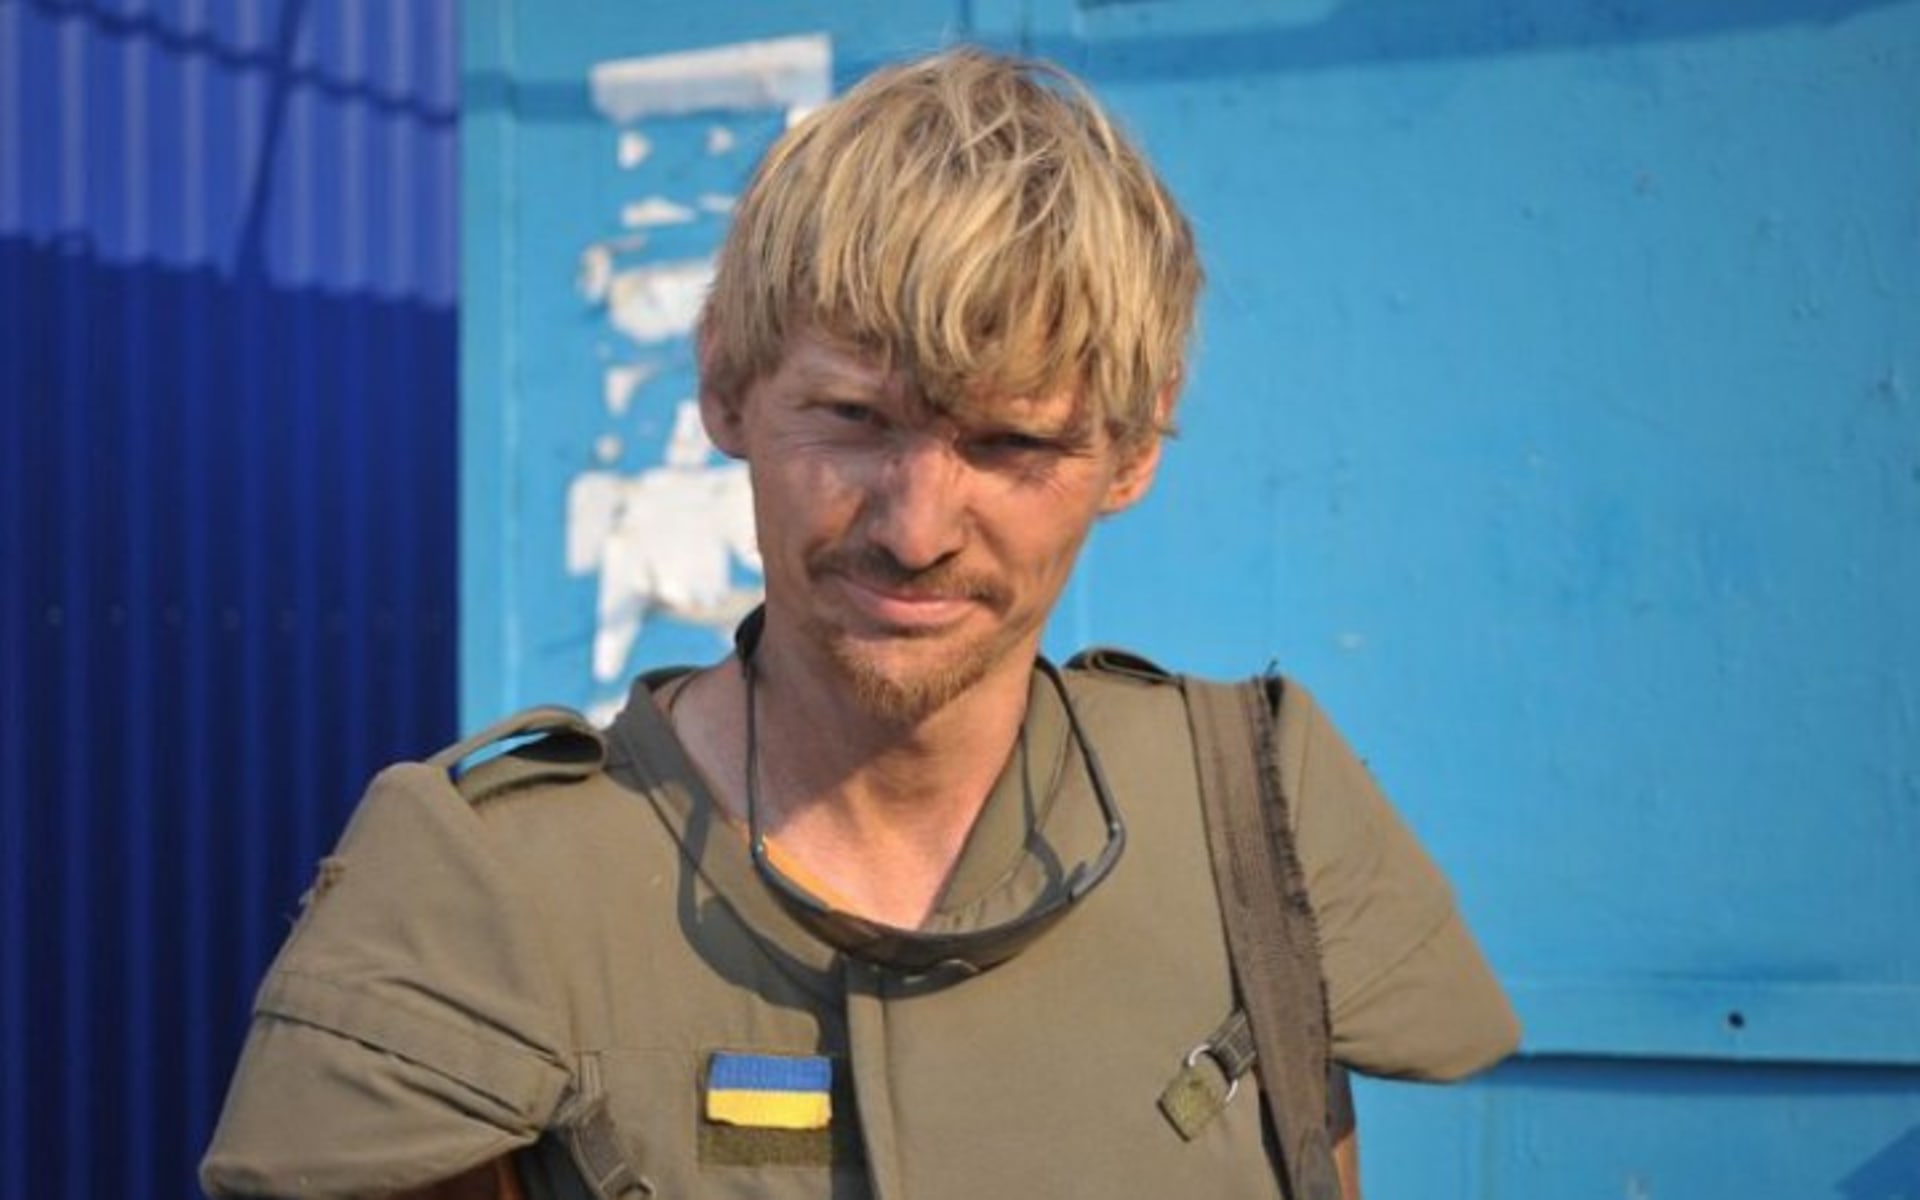 Ukrajinského reportéra Makse Levina zabili ruští vojáci, kteří ho pravděpodobně před tím navíc mučili.